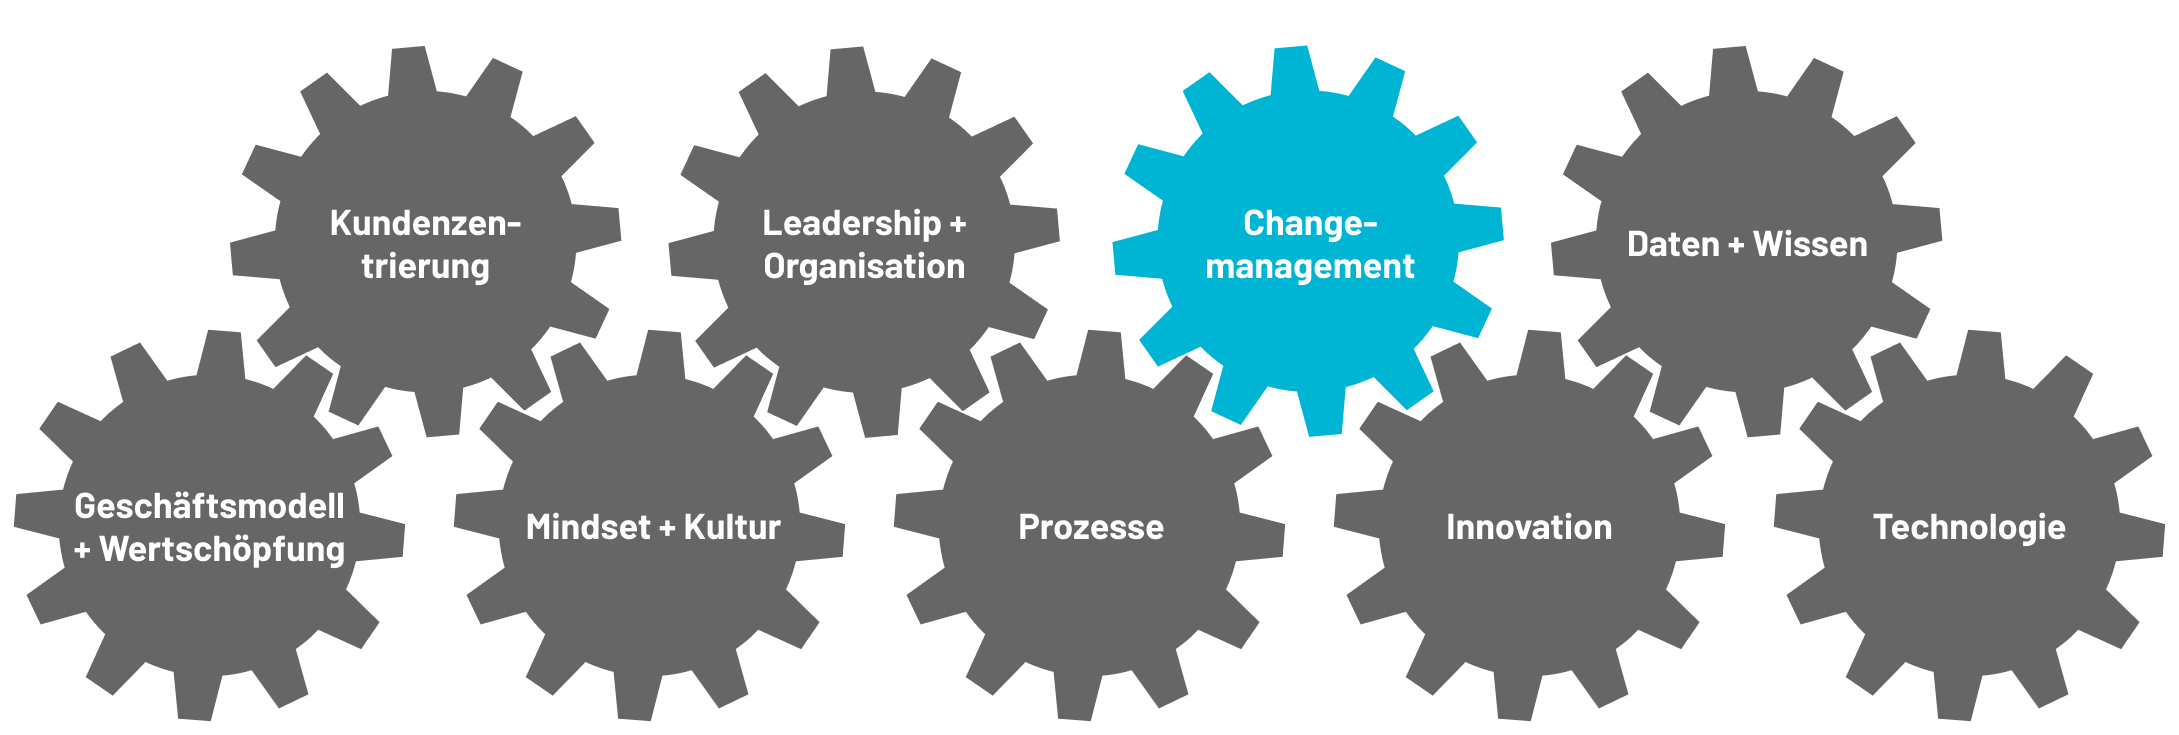 Changemanagement als Bestandteil der Digitalisierung